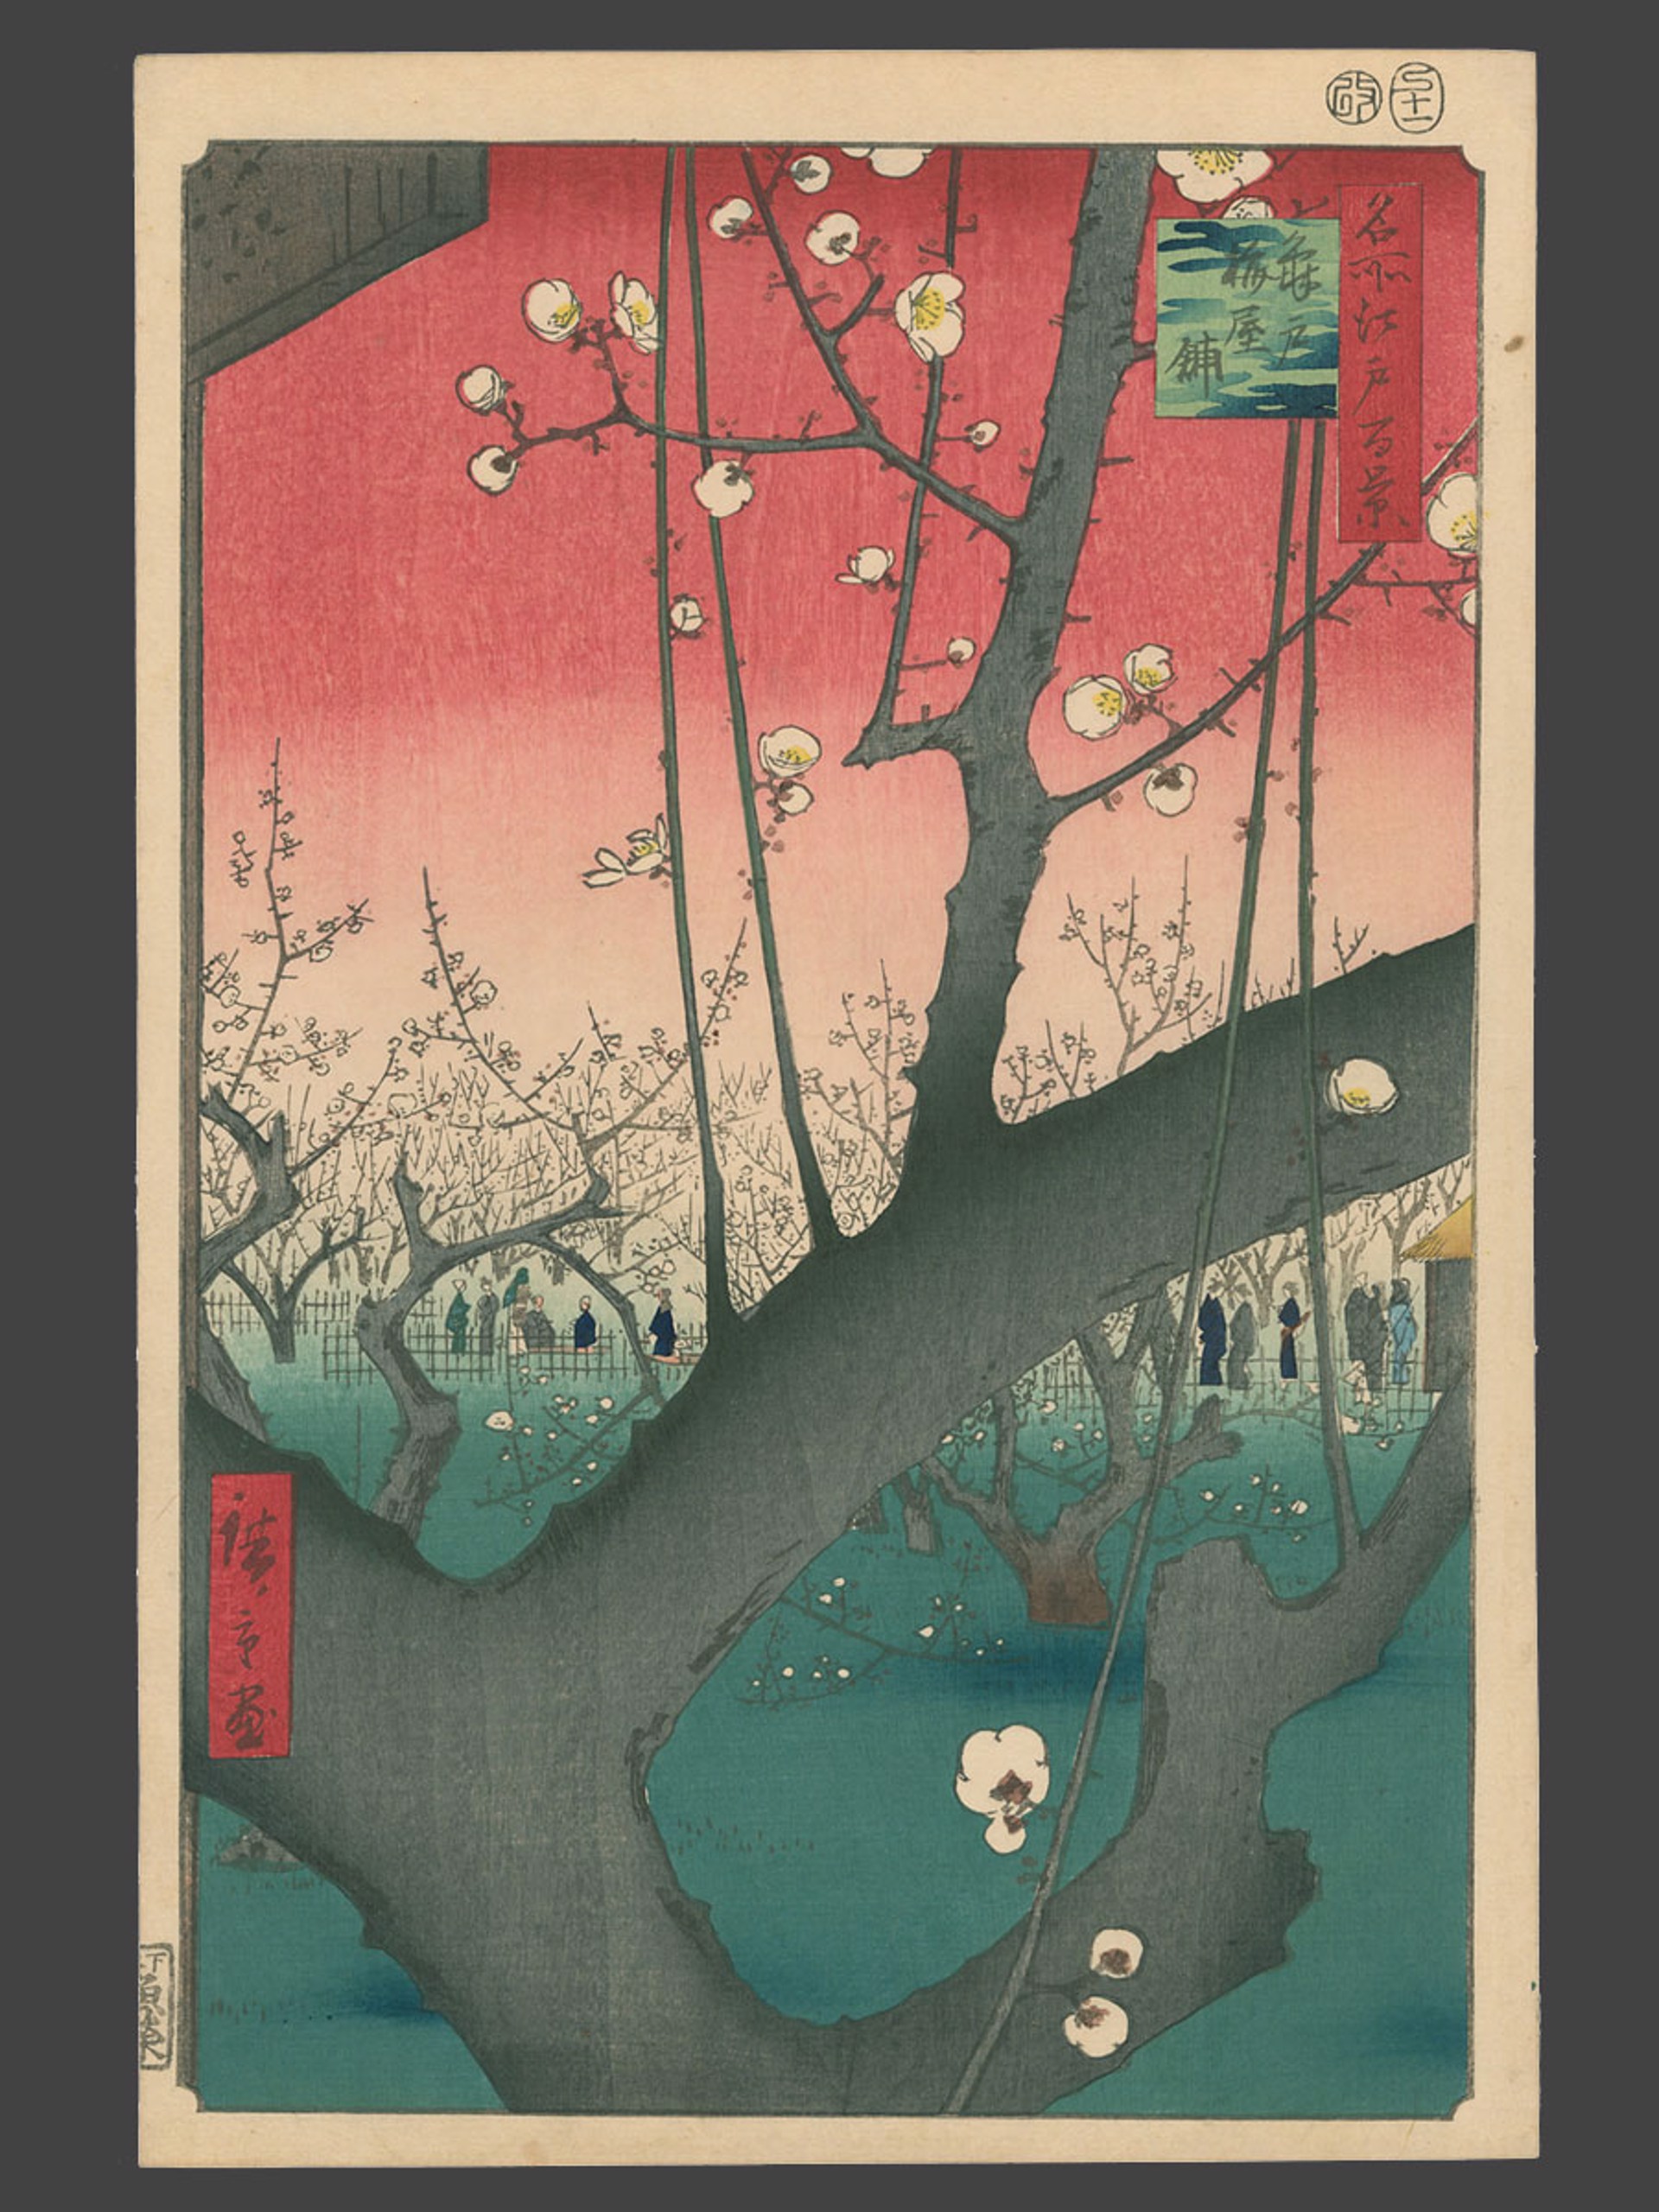 #30 Kameido Plum Garden 100 Views of Edo by Hiroshige